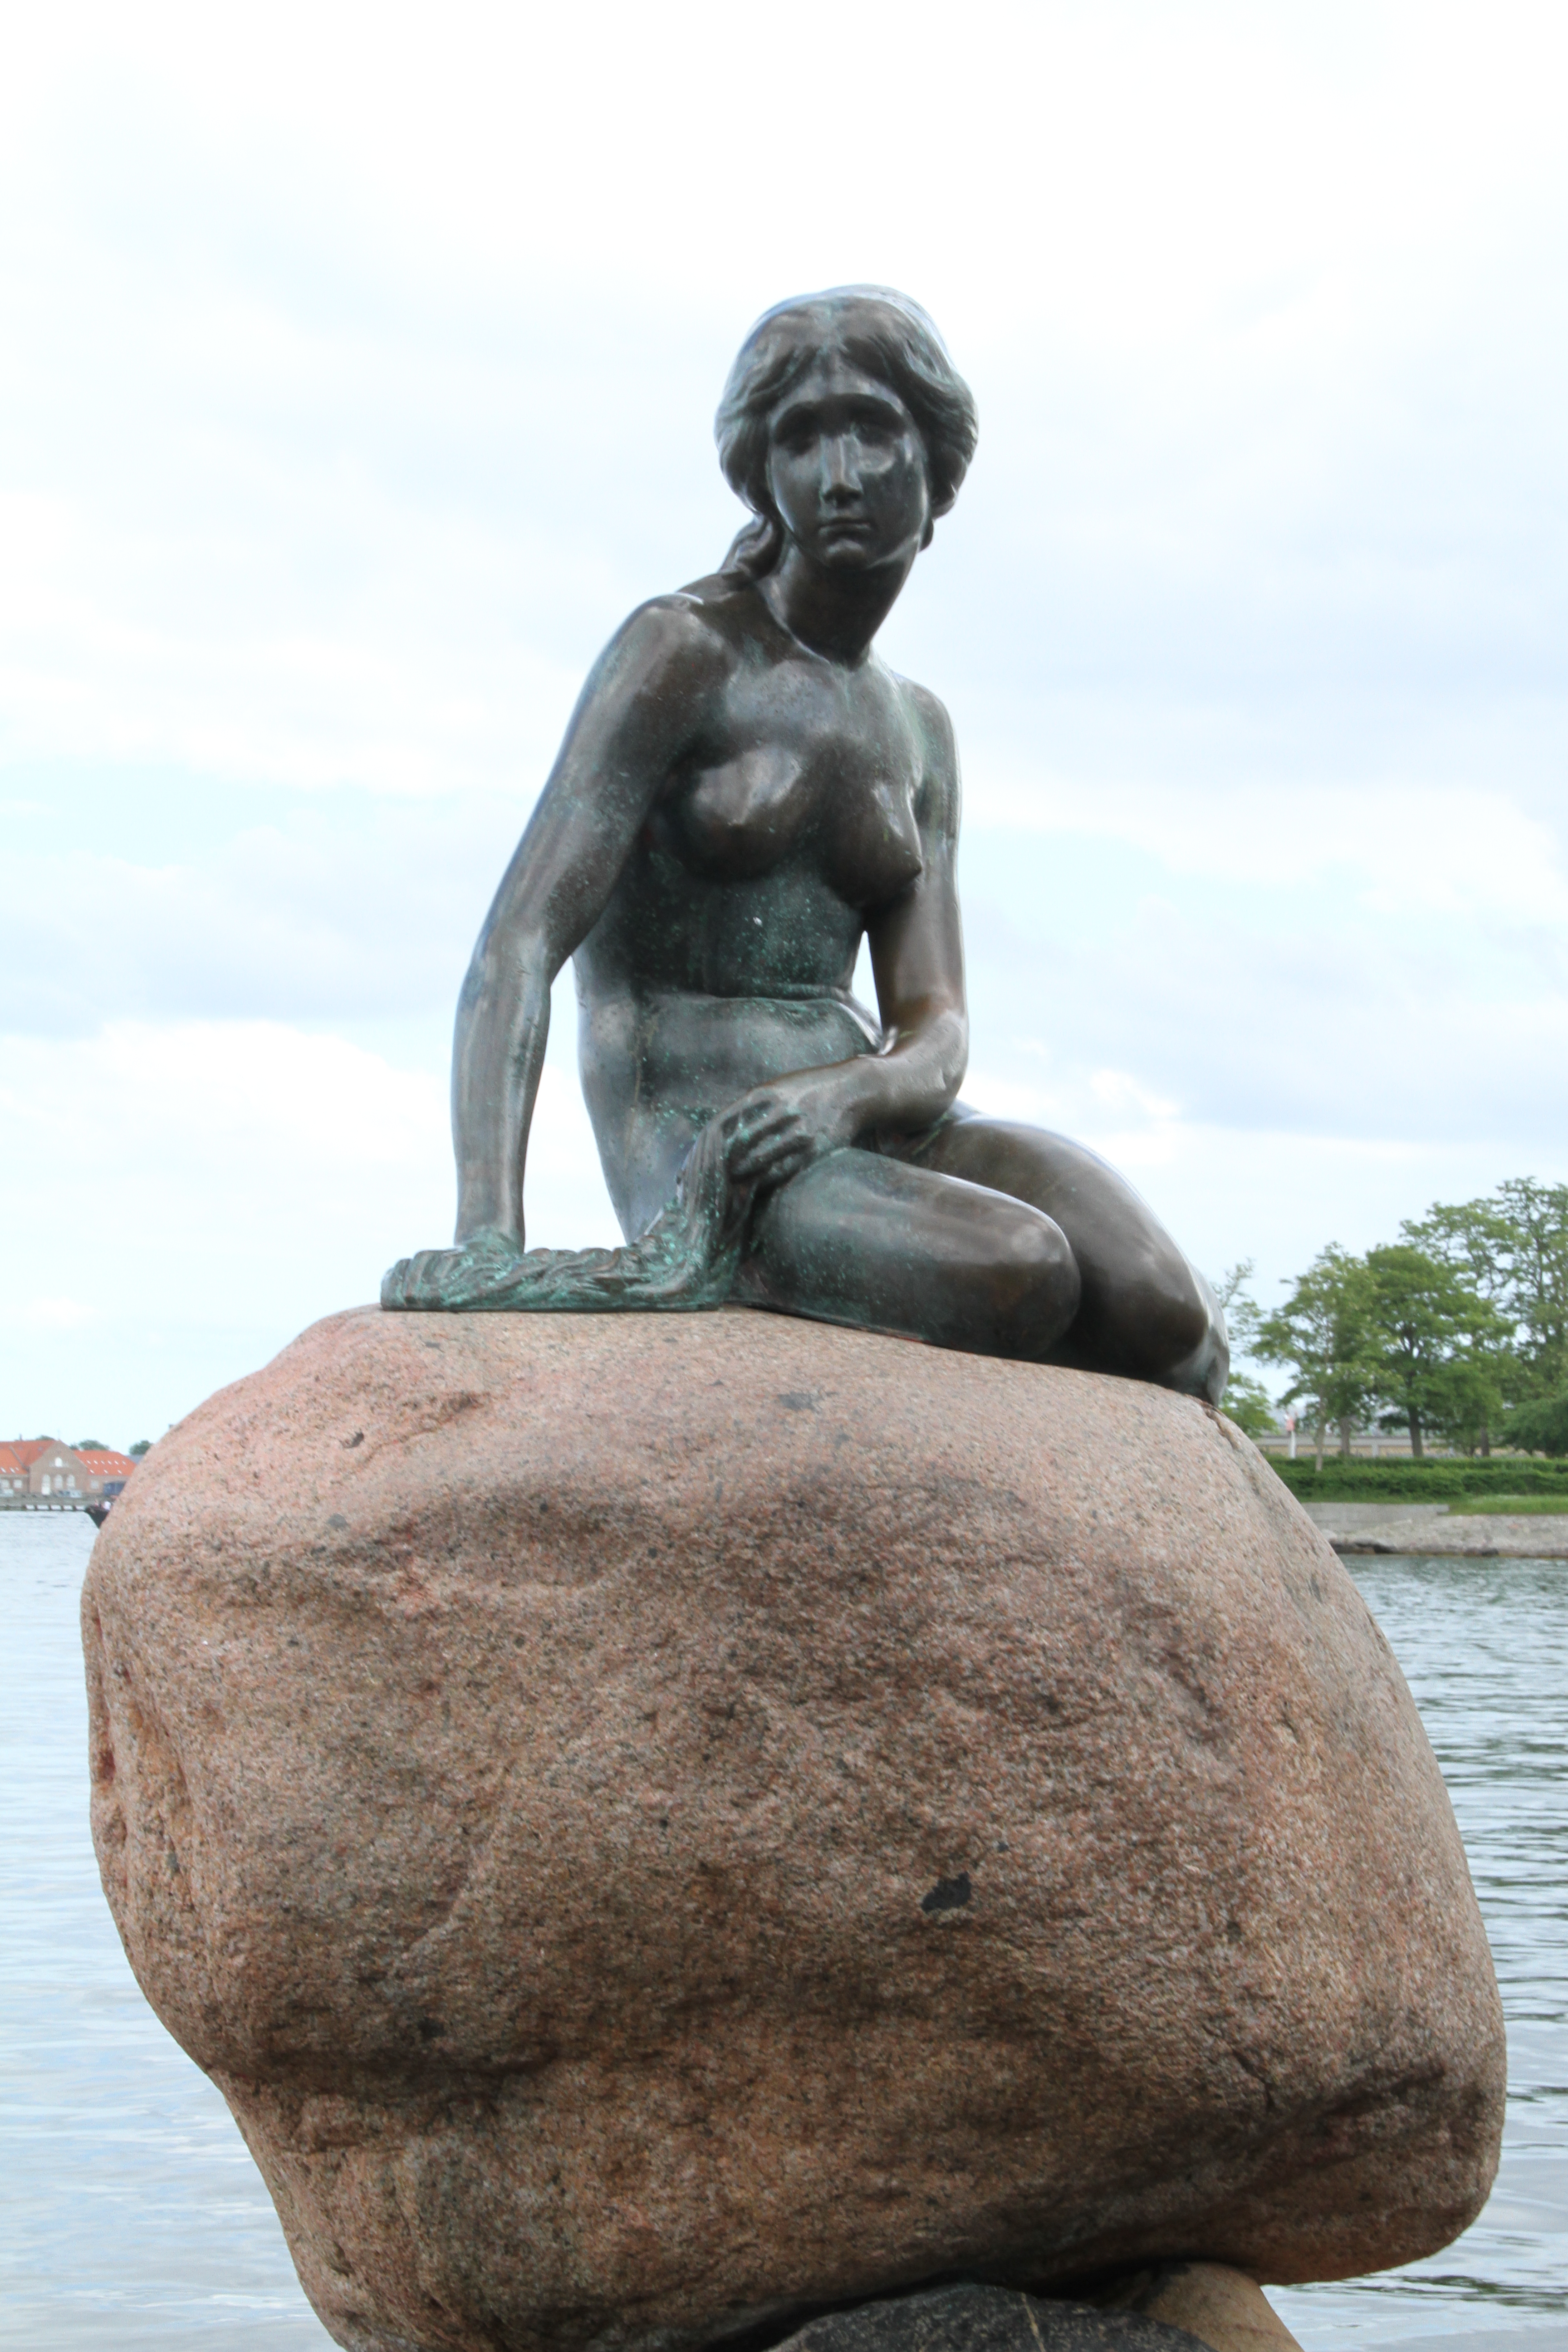 美人鱼铜像在诞生后的100多年里,也遭遇了三次劫难,被砍头断臂,不